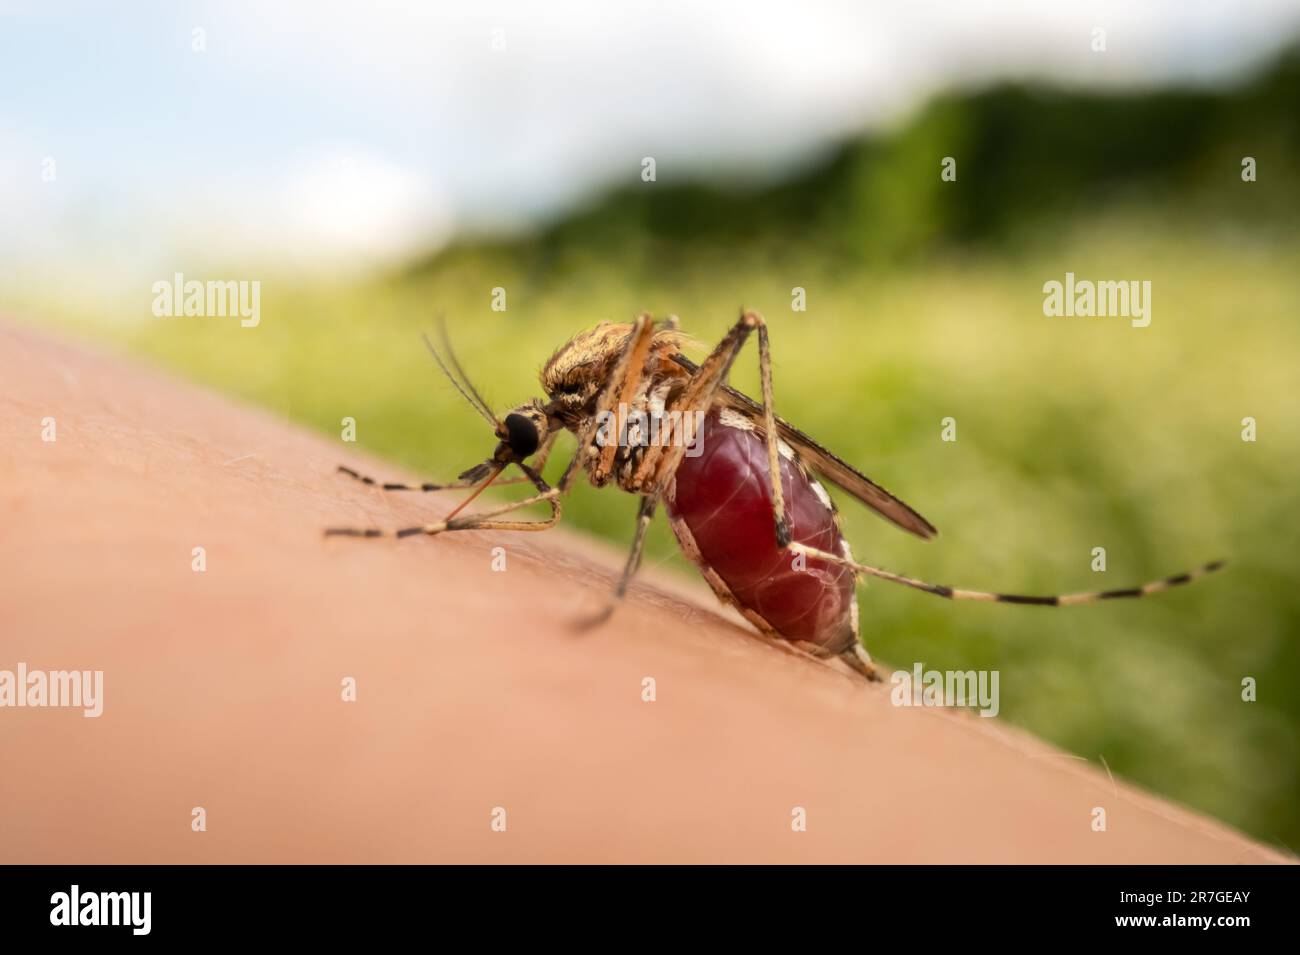 Primo piano macro foto di una zanzara che succhia sangue. zanzara piena di sangue sulla fotografia umana skin.Insect Foto Stock